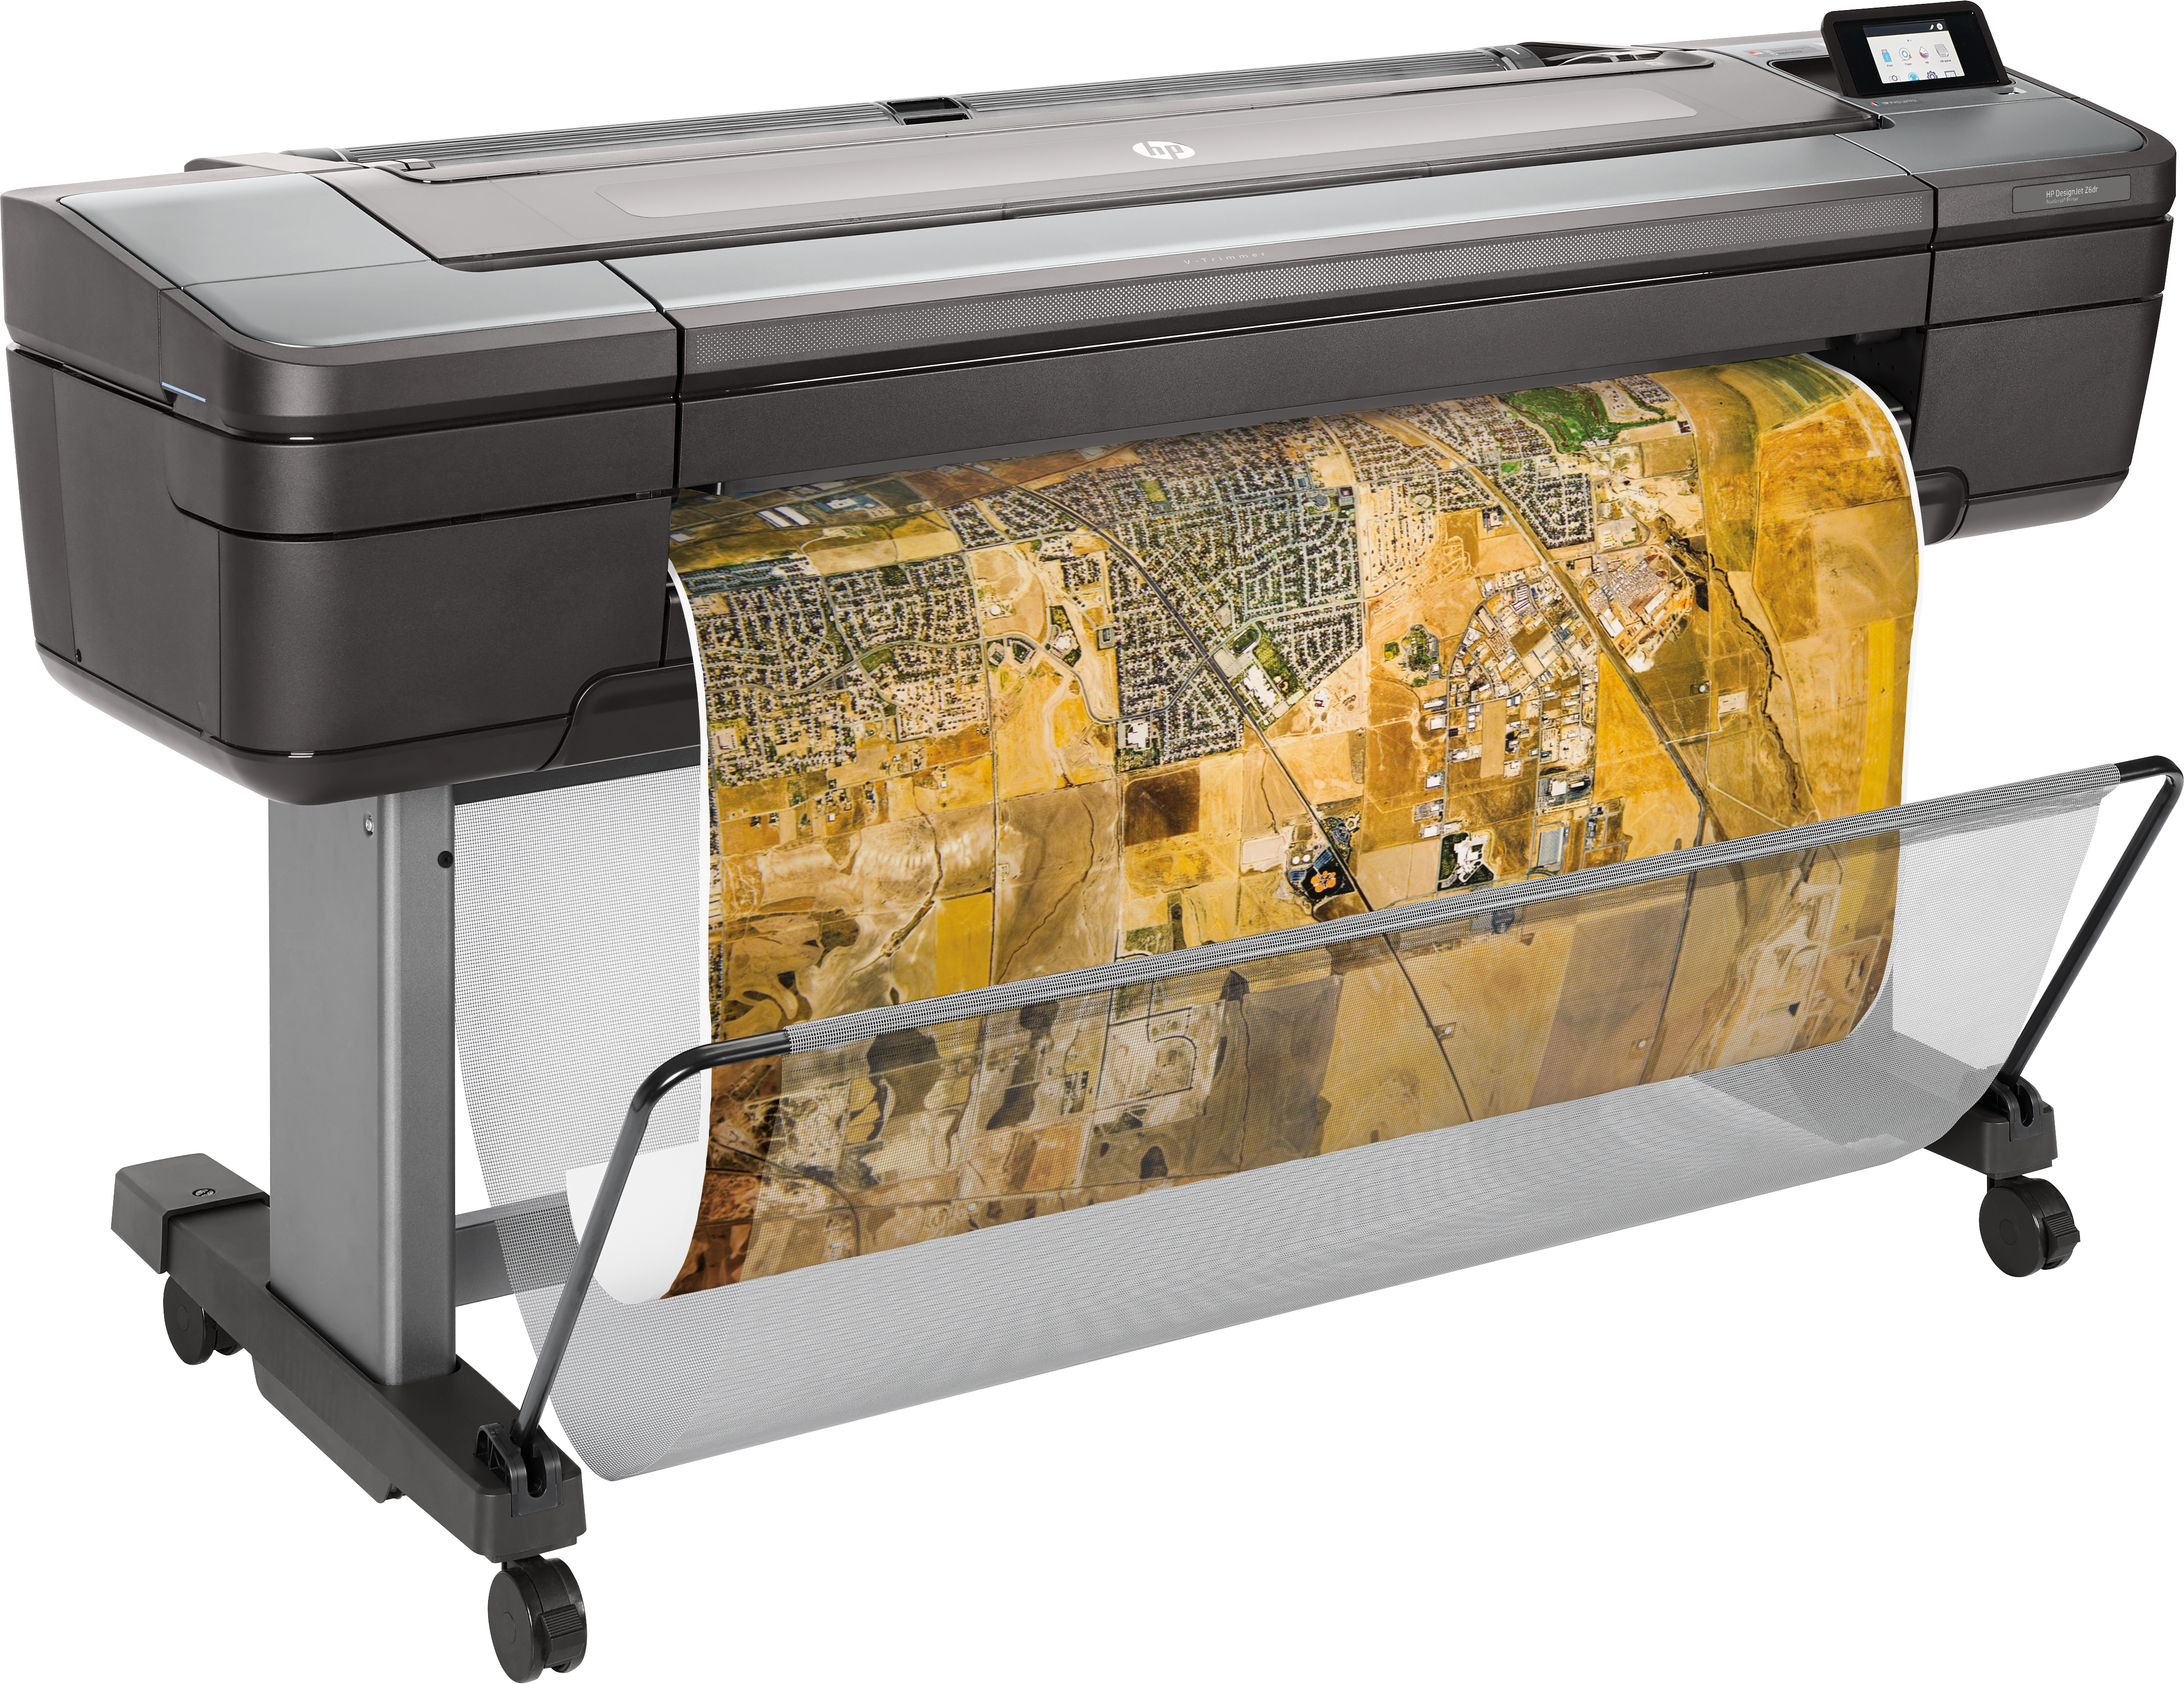 HP Designjet Z6 stampante grandi formati Ad inchiostro A colori 2400 x 1200 DPI A1 (594 841 mm) [T8W15A]